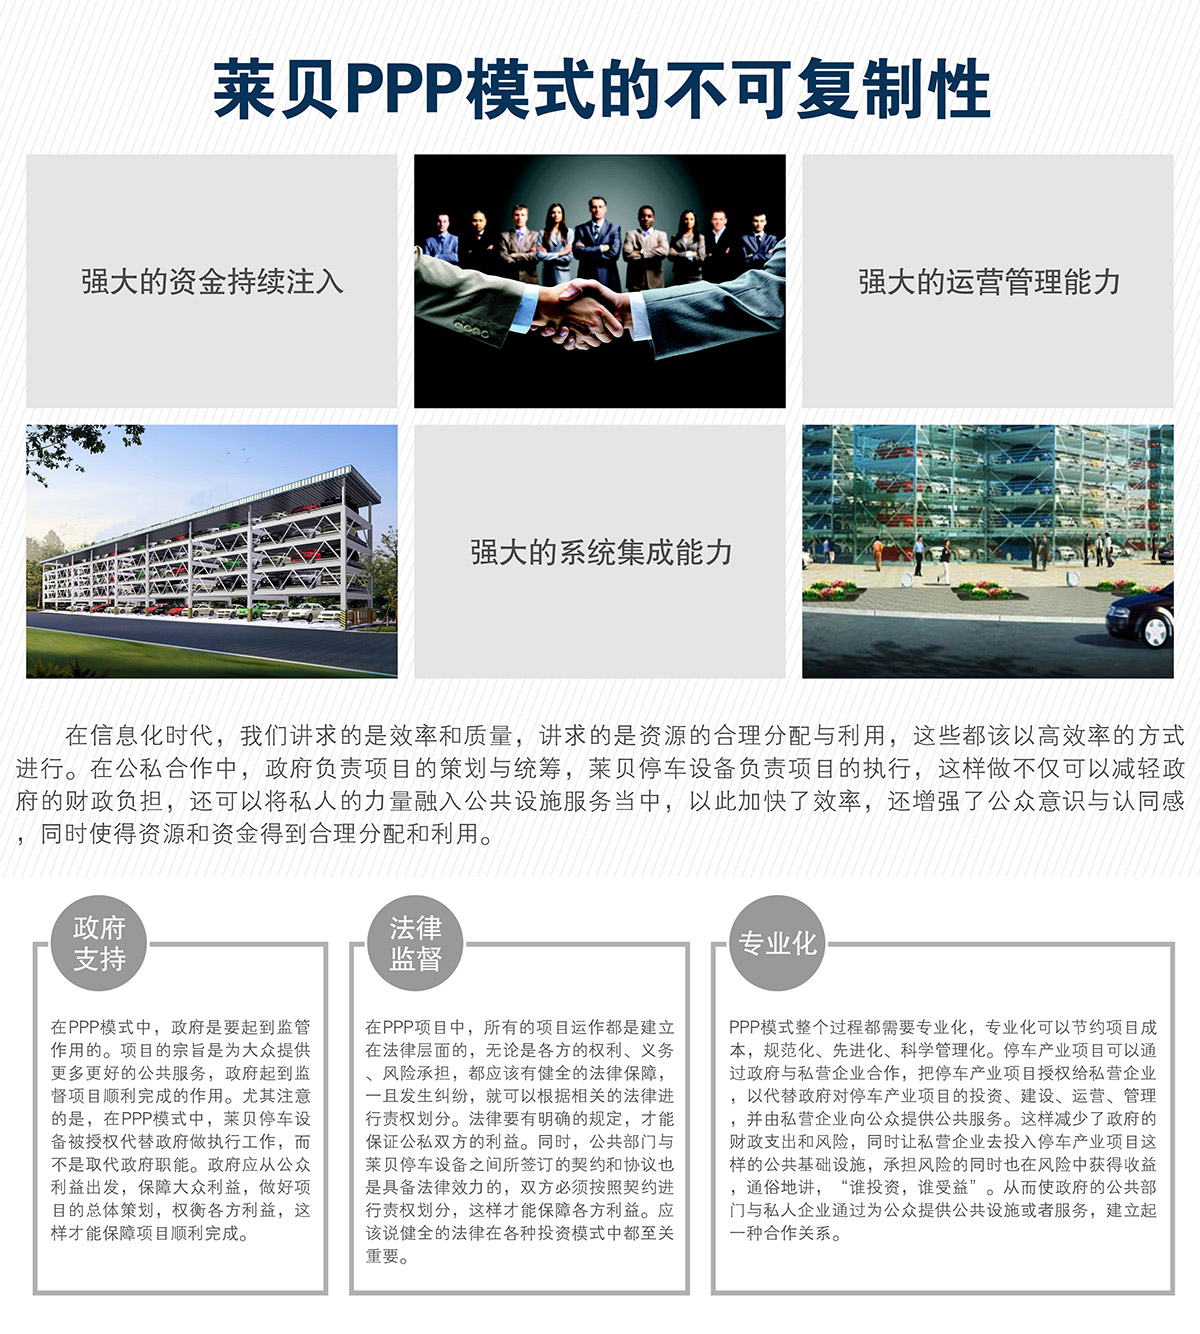 贵州莱贝机械停车位投融资建设PPP模式的不可复制性.jpg